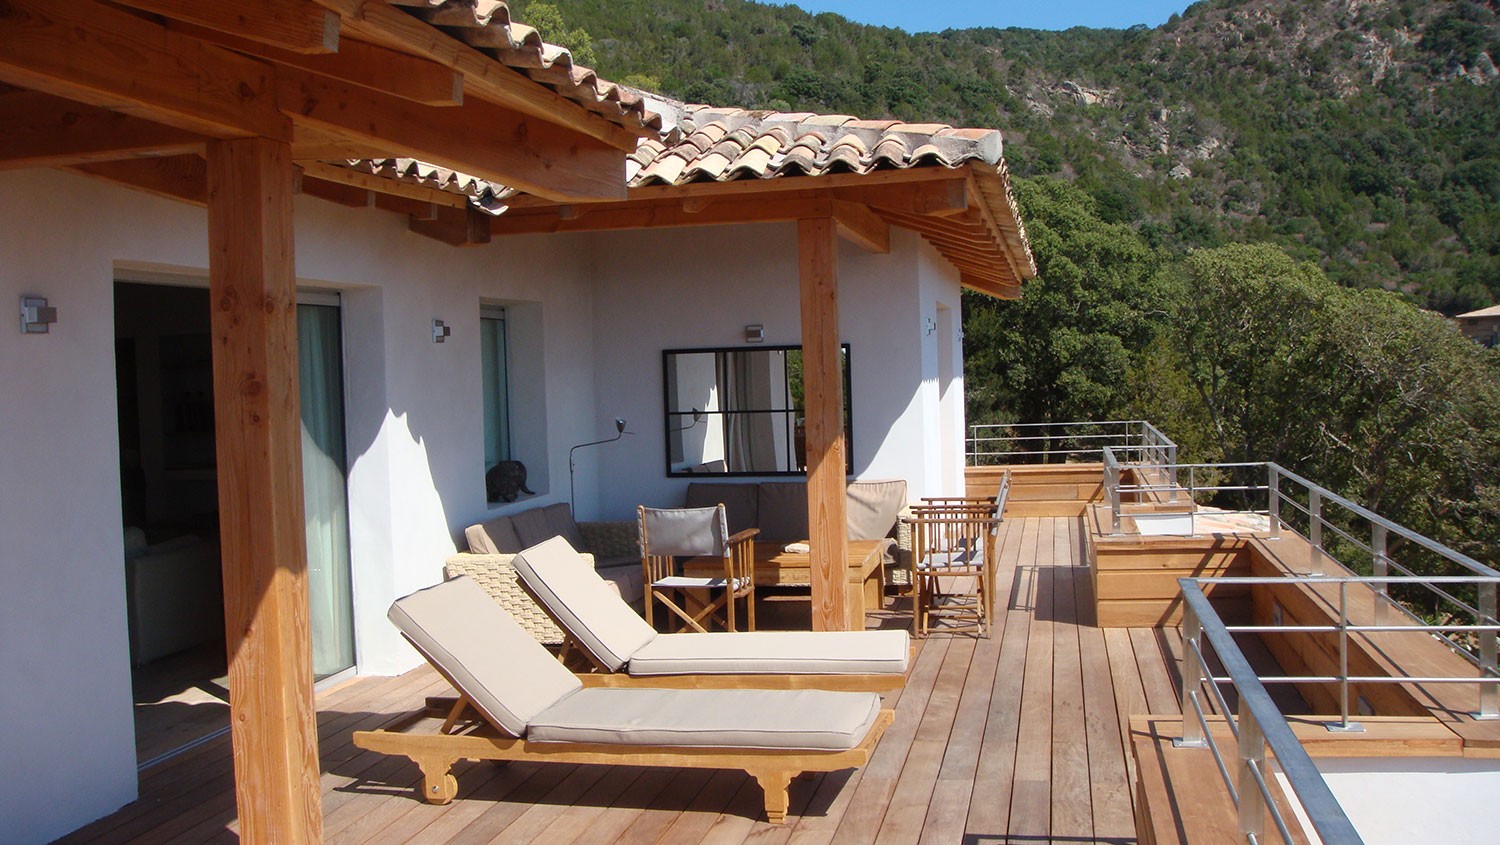 Casucia : terrasse, bain de soleil